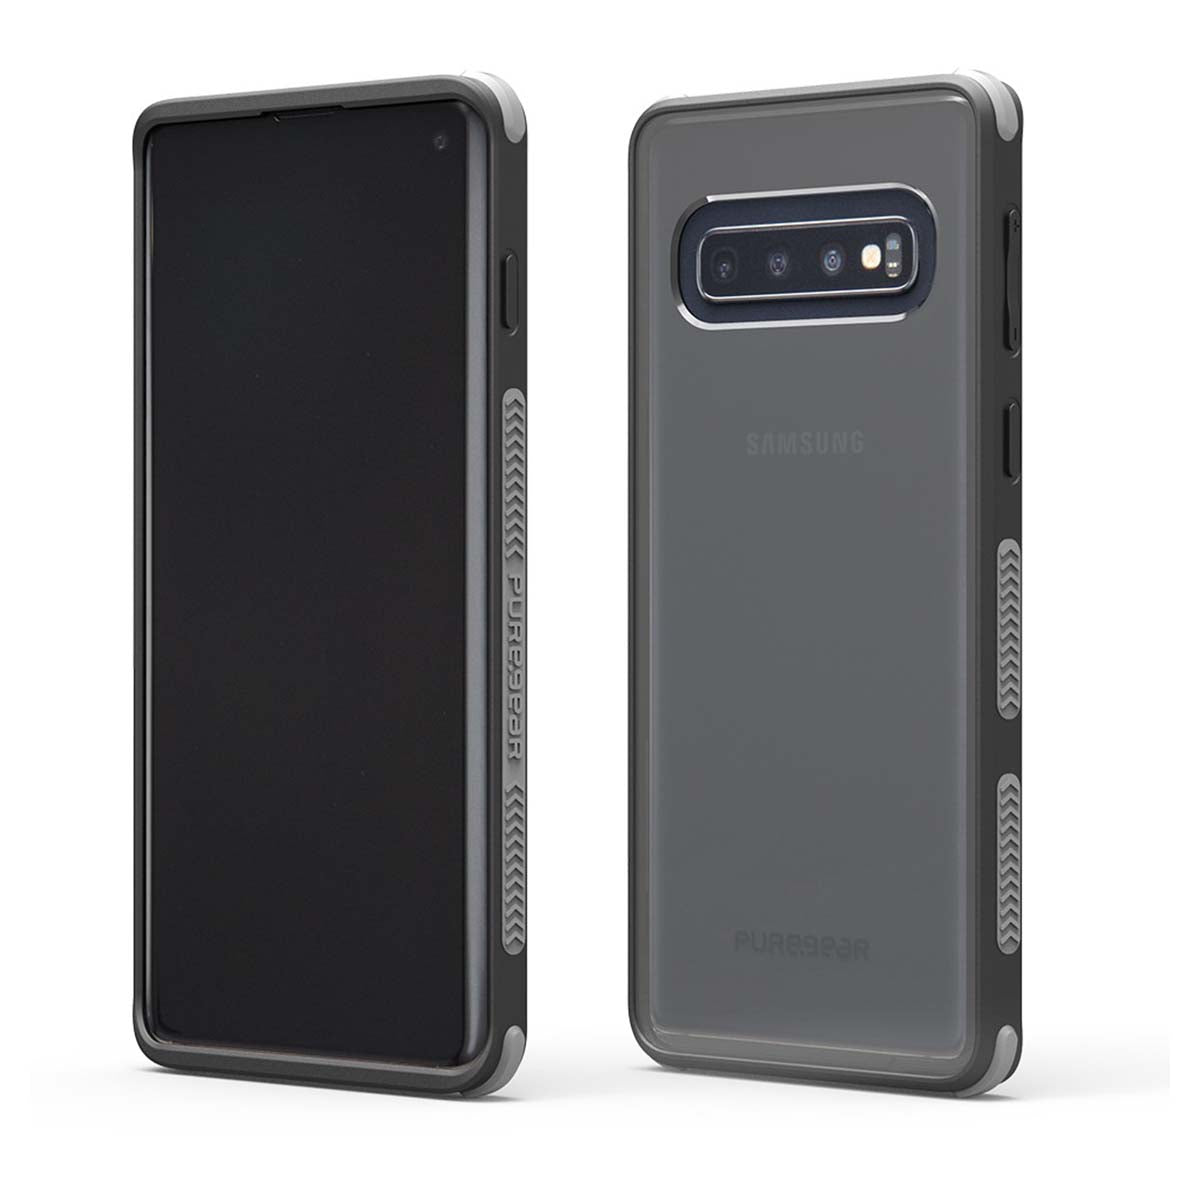 Puregear - Samsung Galaxy S10 Deals!